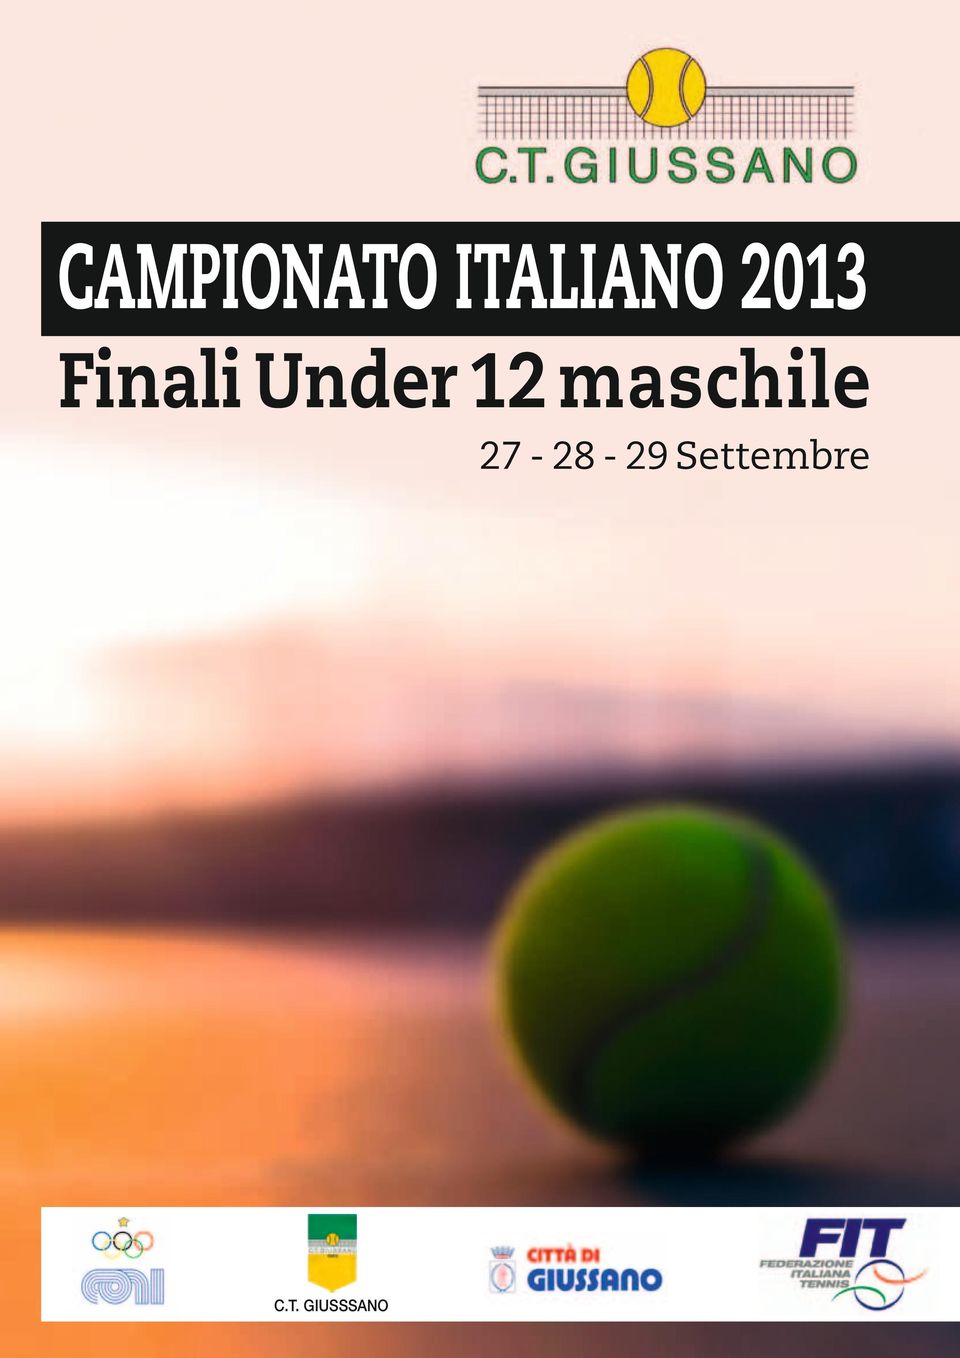 Finali Under 12 maschile